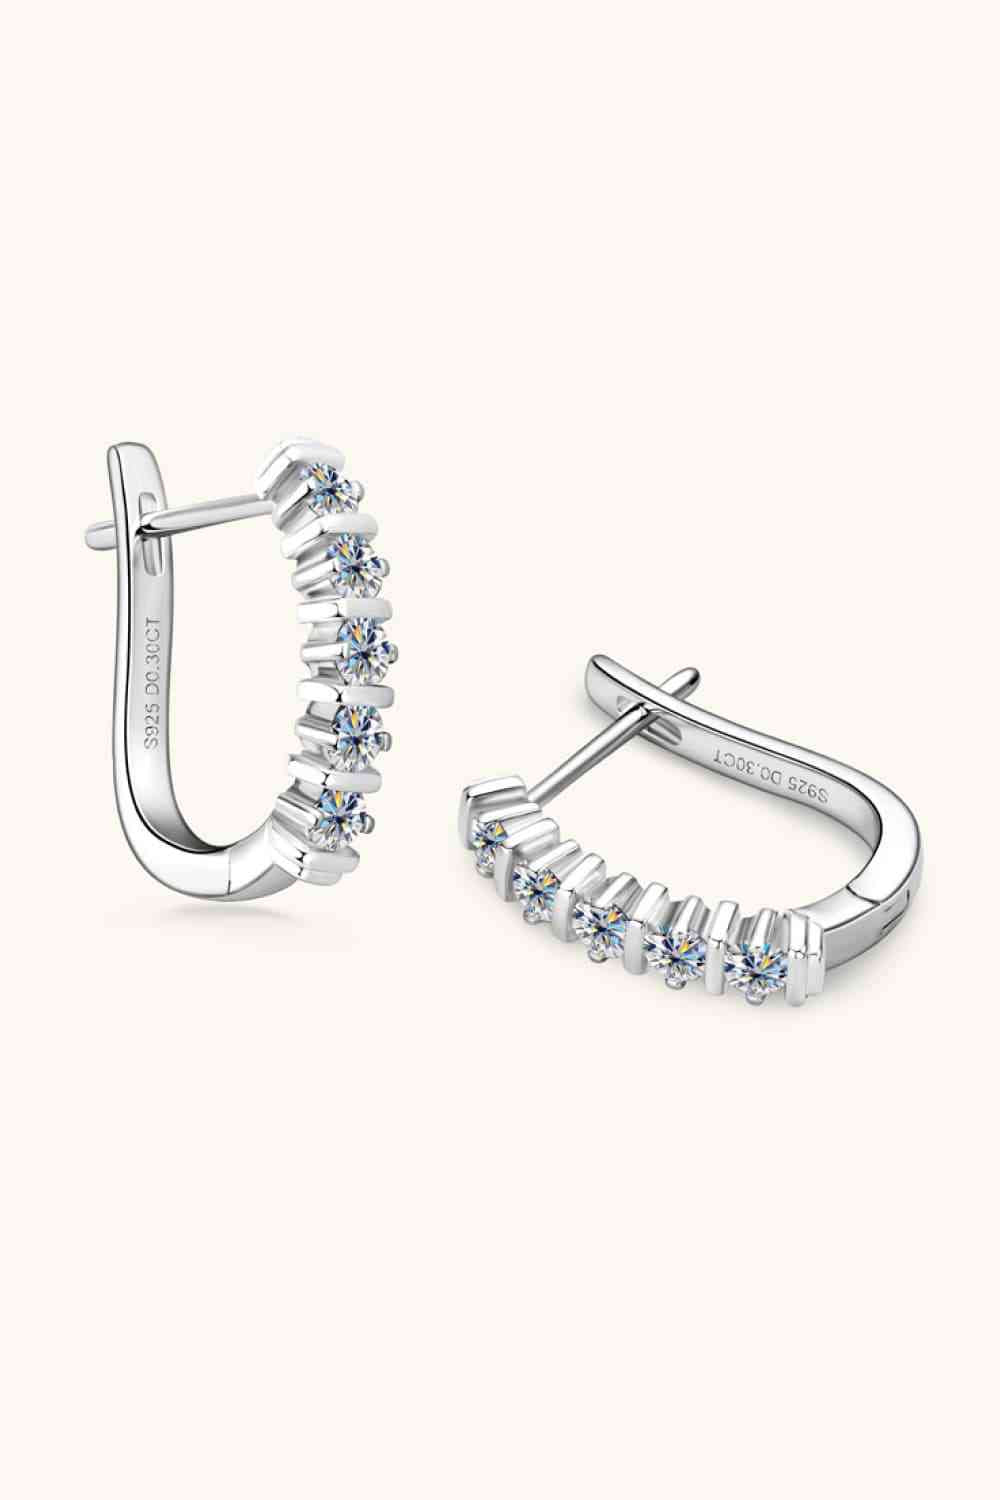 Moissanite 925 Sterling Silver Earrings - Tophatter Deals